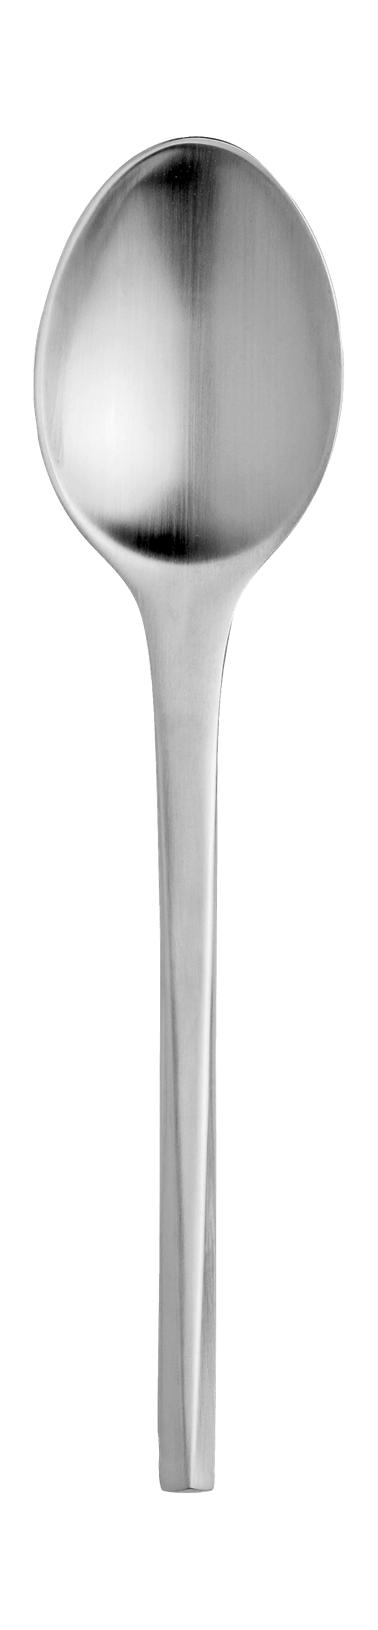 Stelton Prisme Table Spoon